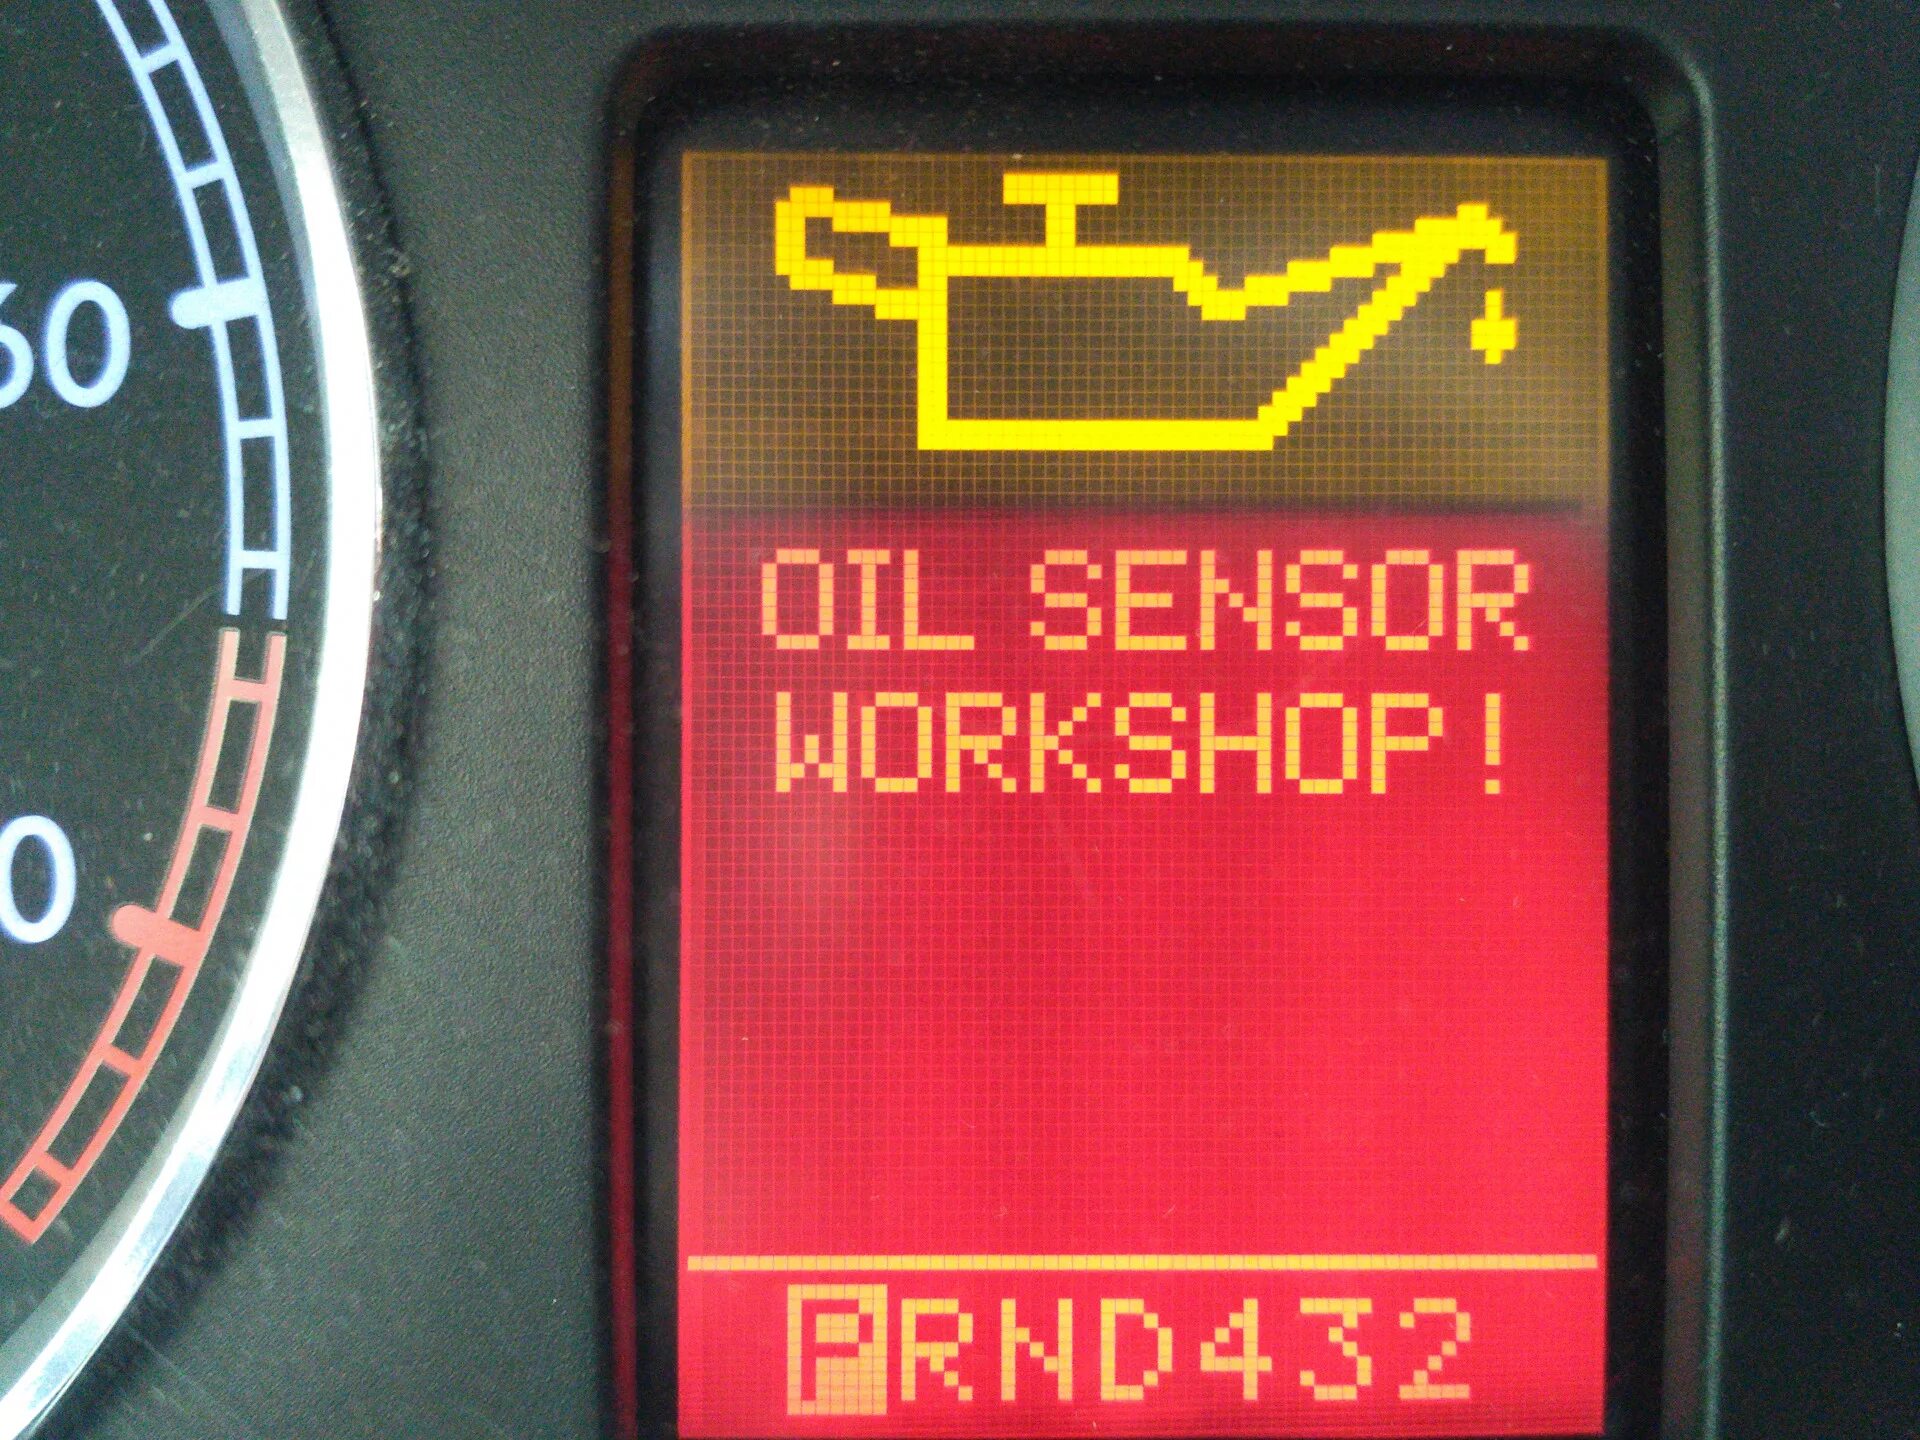 Желтая масленка Ауди а4. Oil sensor Workshop Passat b6. Желтая масленка sensor Ауди а4 б6. Желтая масленка Ауди а4 b6.